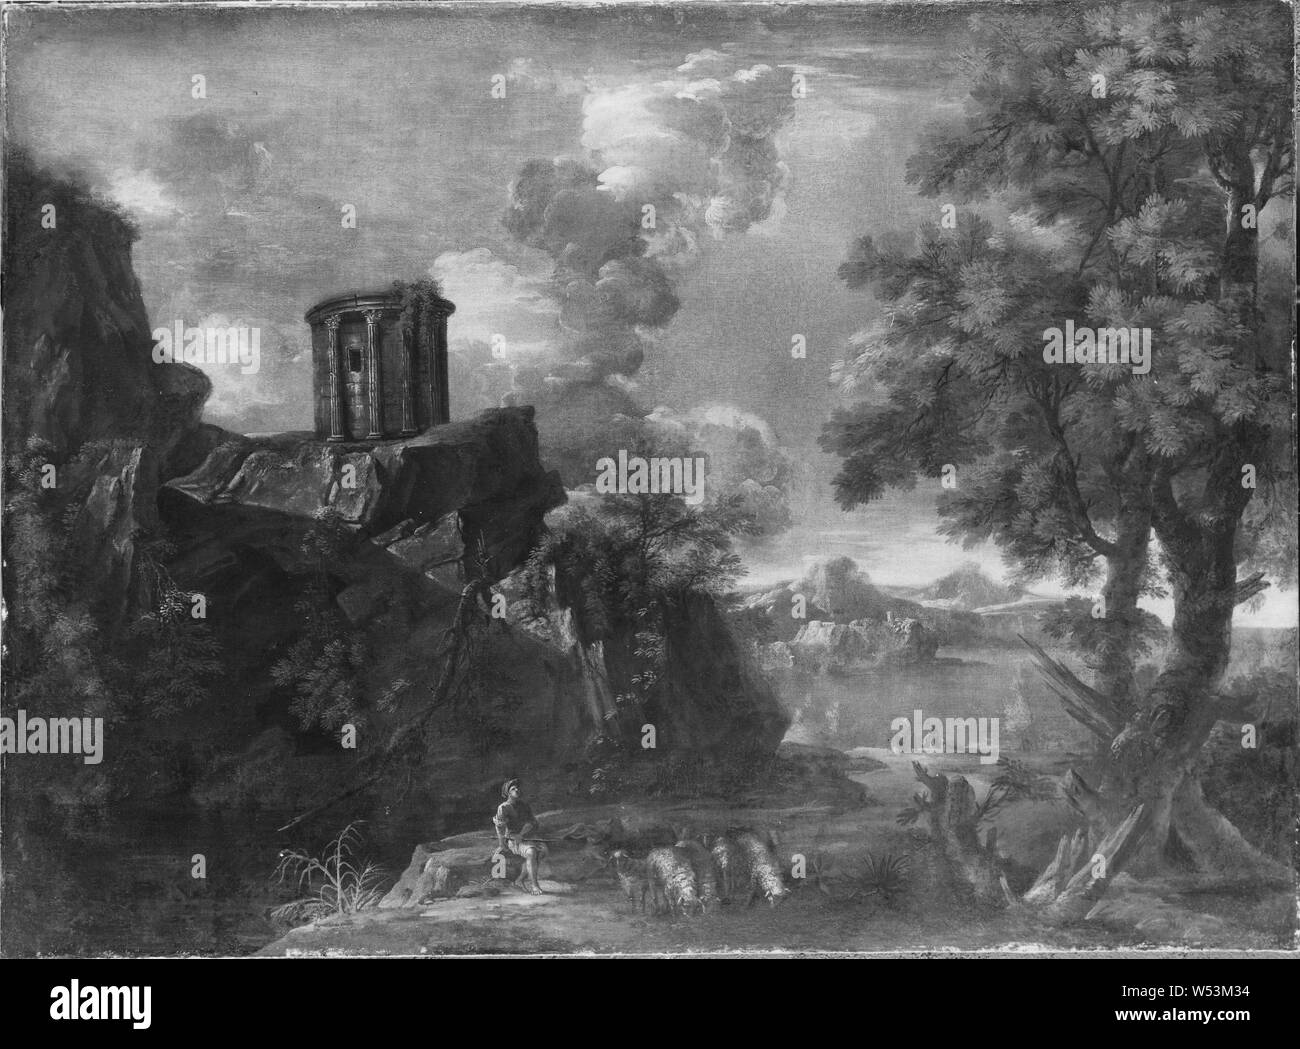 Art und Weise der Jacob de Heusch, Landschaft mit einem kreisförmigen Tempel, Landschaft mit runder Tempel, Öl auf Leinwand, Höhe 122 cm (48 Zoll), Breite 171 cm (67,3 Zoll) Stockfoto